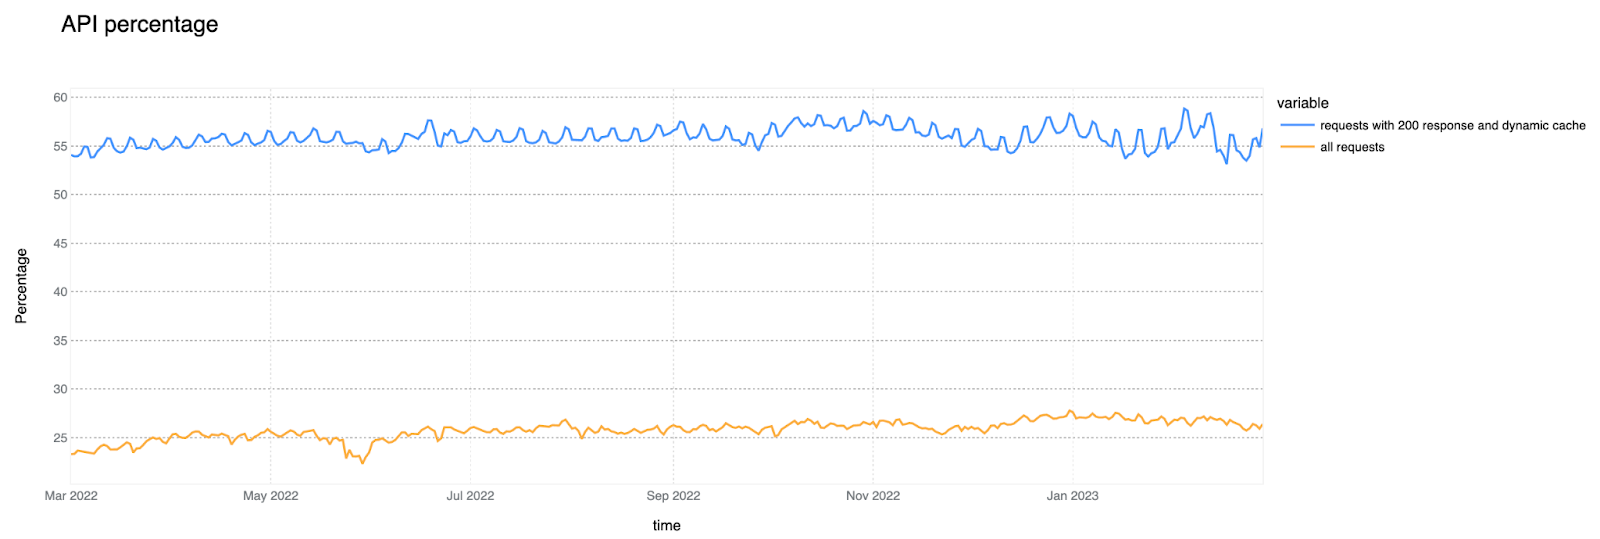 過去 12 個月的 API 流量：HTTP 要求的百分比總計，以及 200 回應非快取 HTTP 要求的百分比